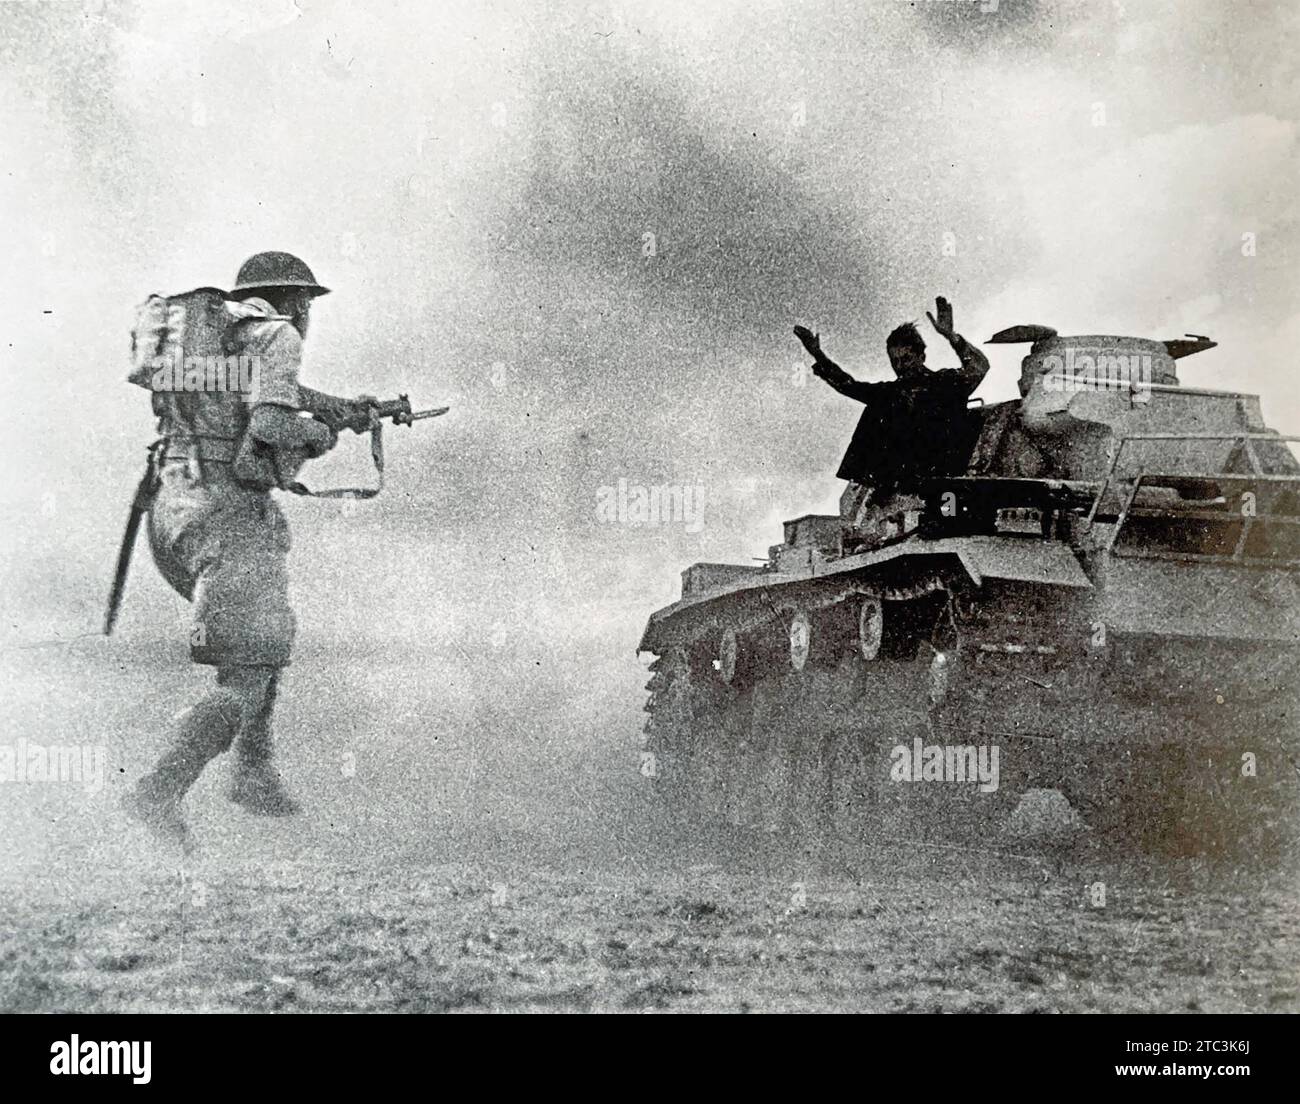 NORDAFRIKA-FELDZUG Ein Soldat der 51. Highland-Division übernimmt die Kapitulation eines italienischen Panzers während der Schlacht von El Alamein im Oktober 1942 Stockfoto